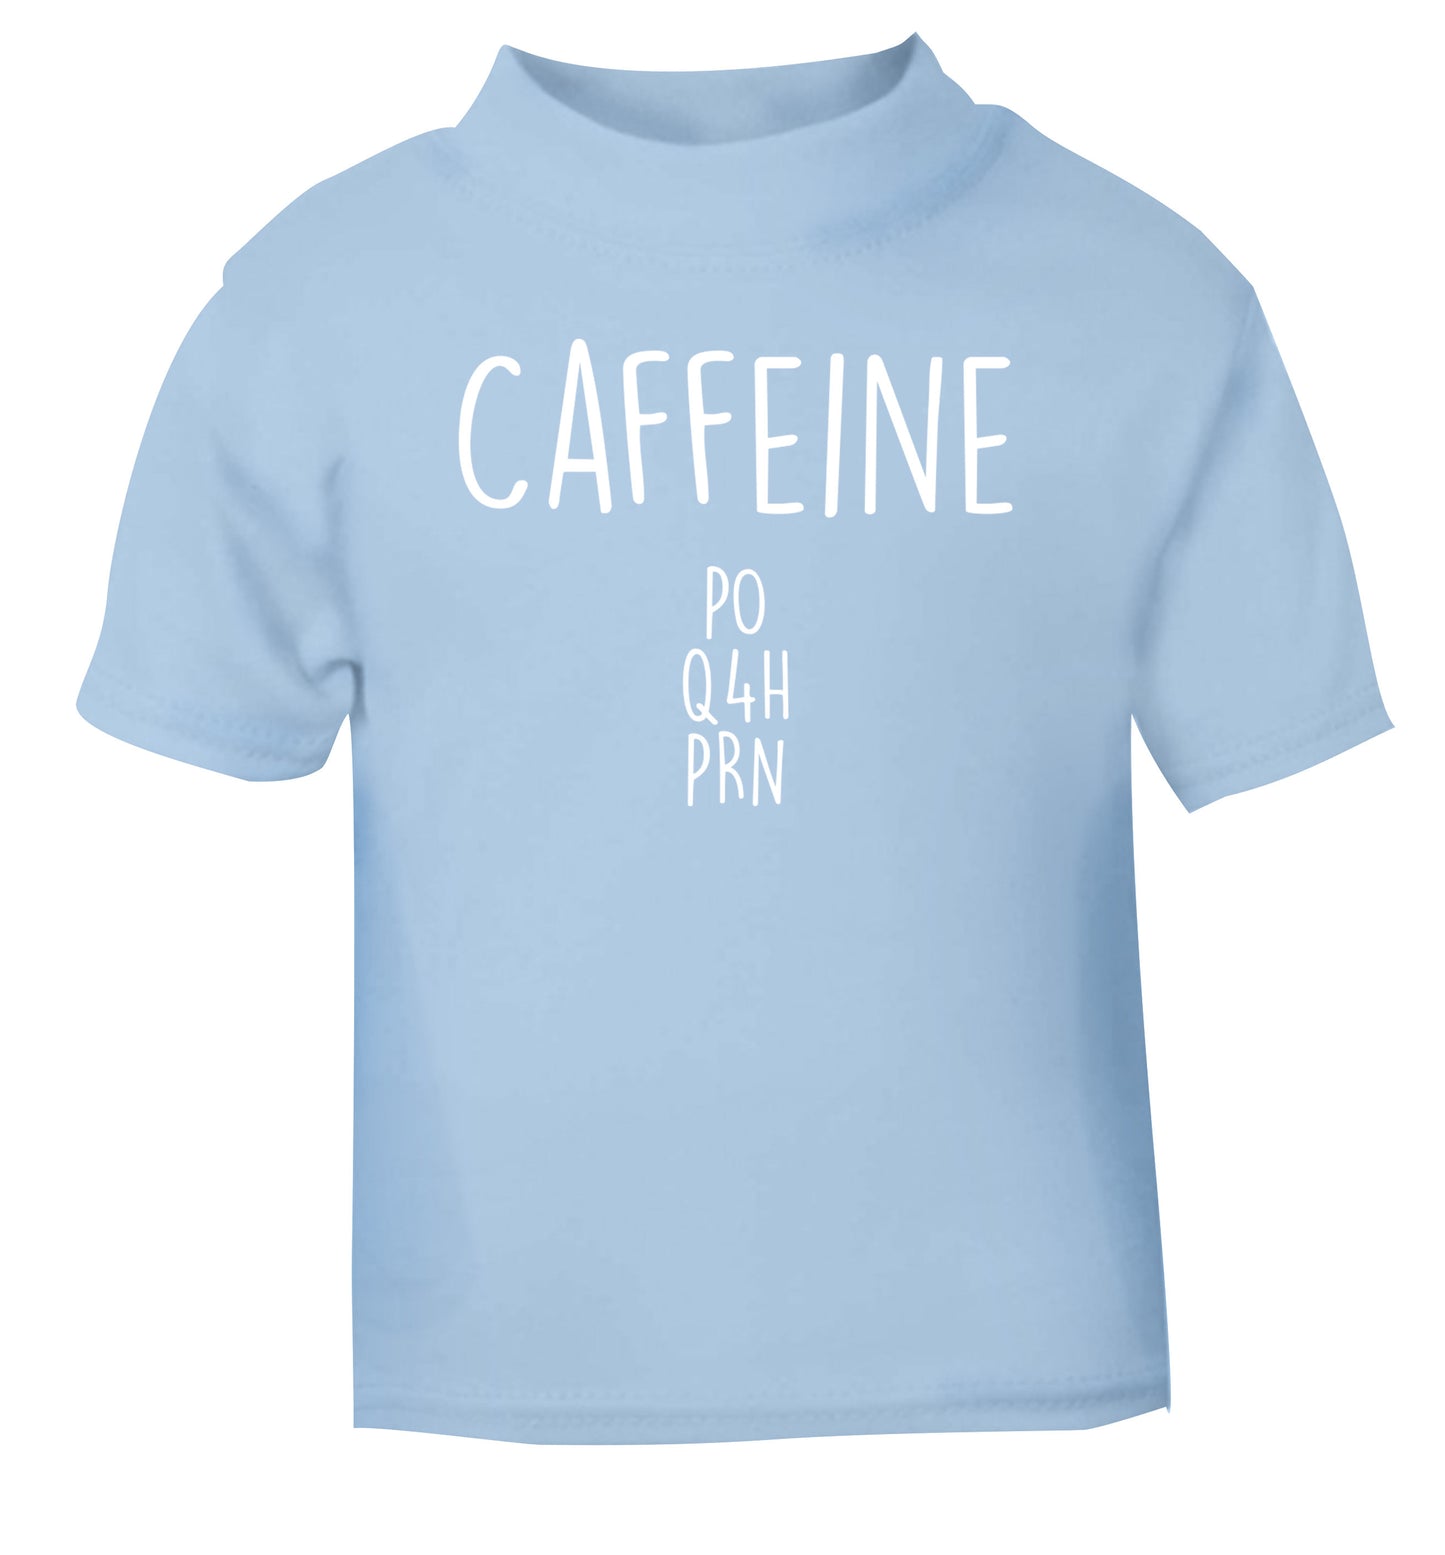 Caffeine PO Q4H PRN light blue Baby Toddler Tshirt 2 Years